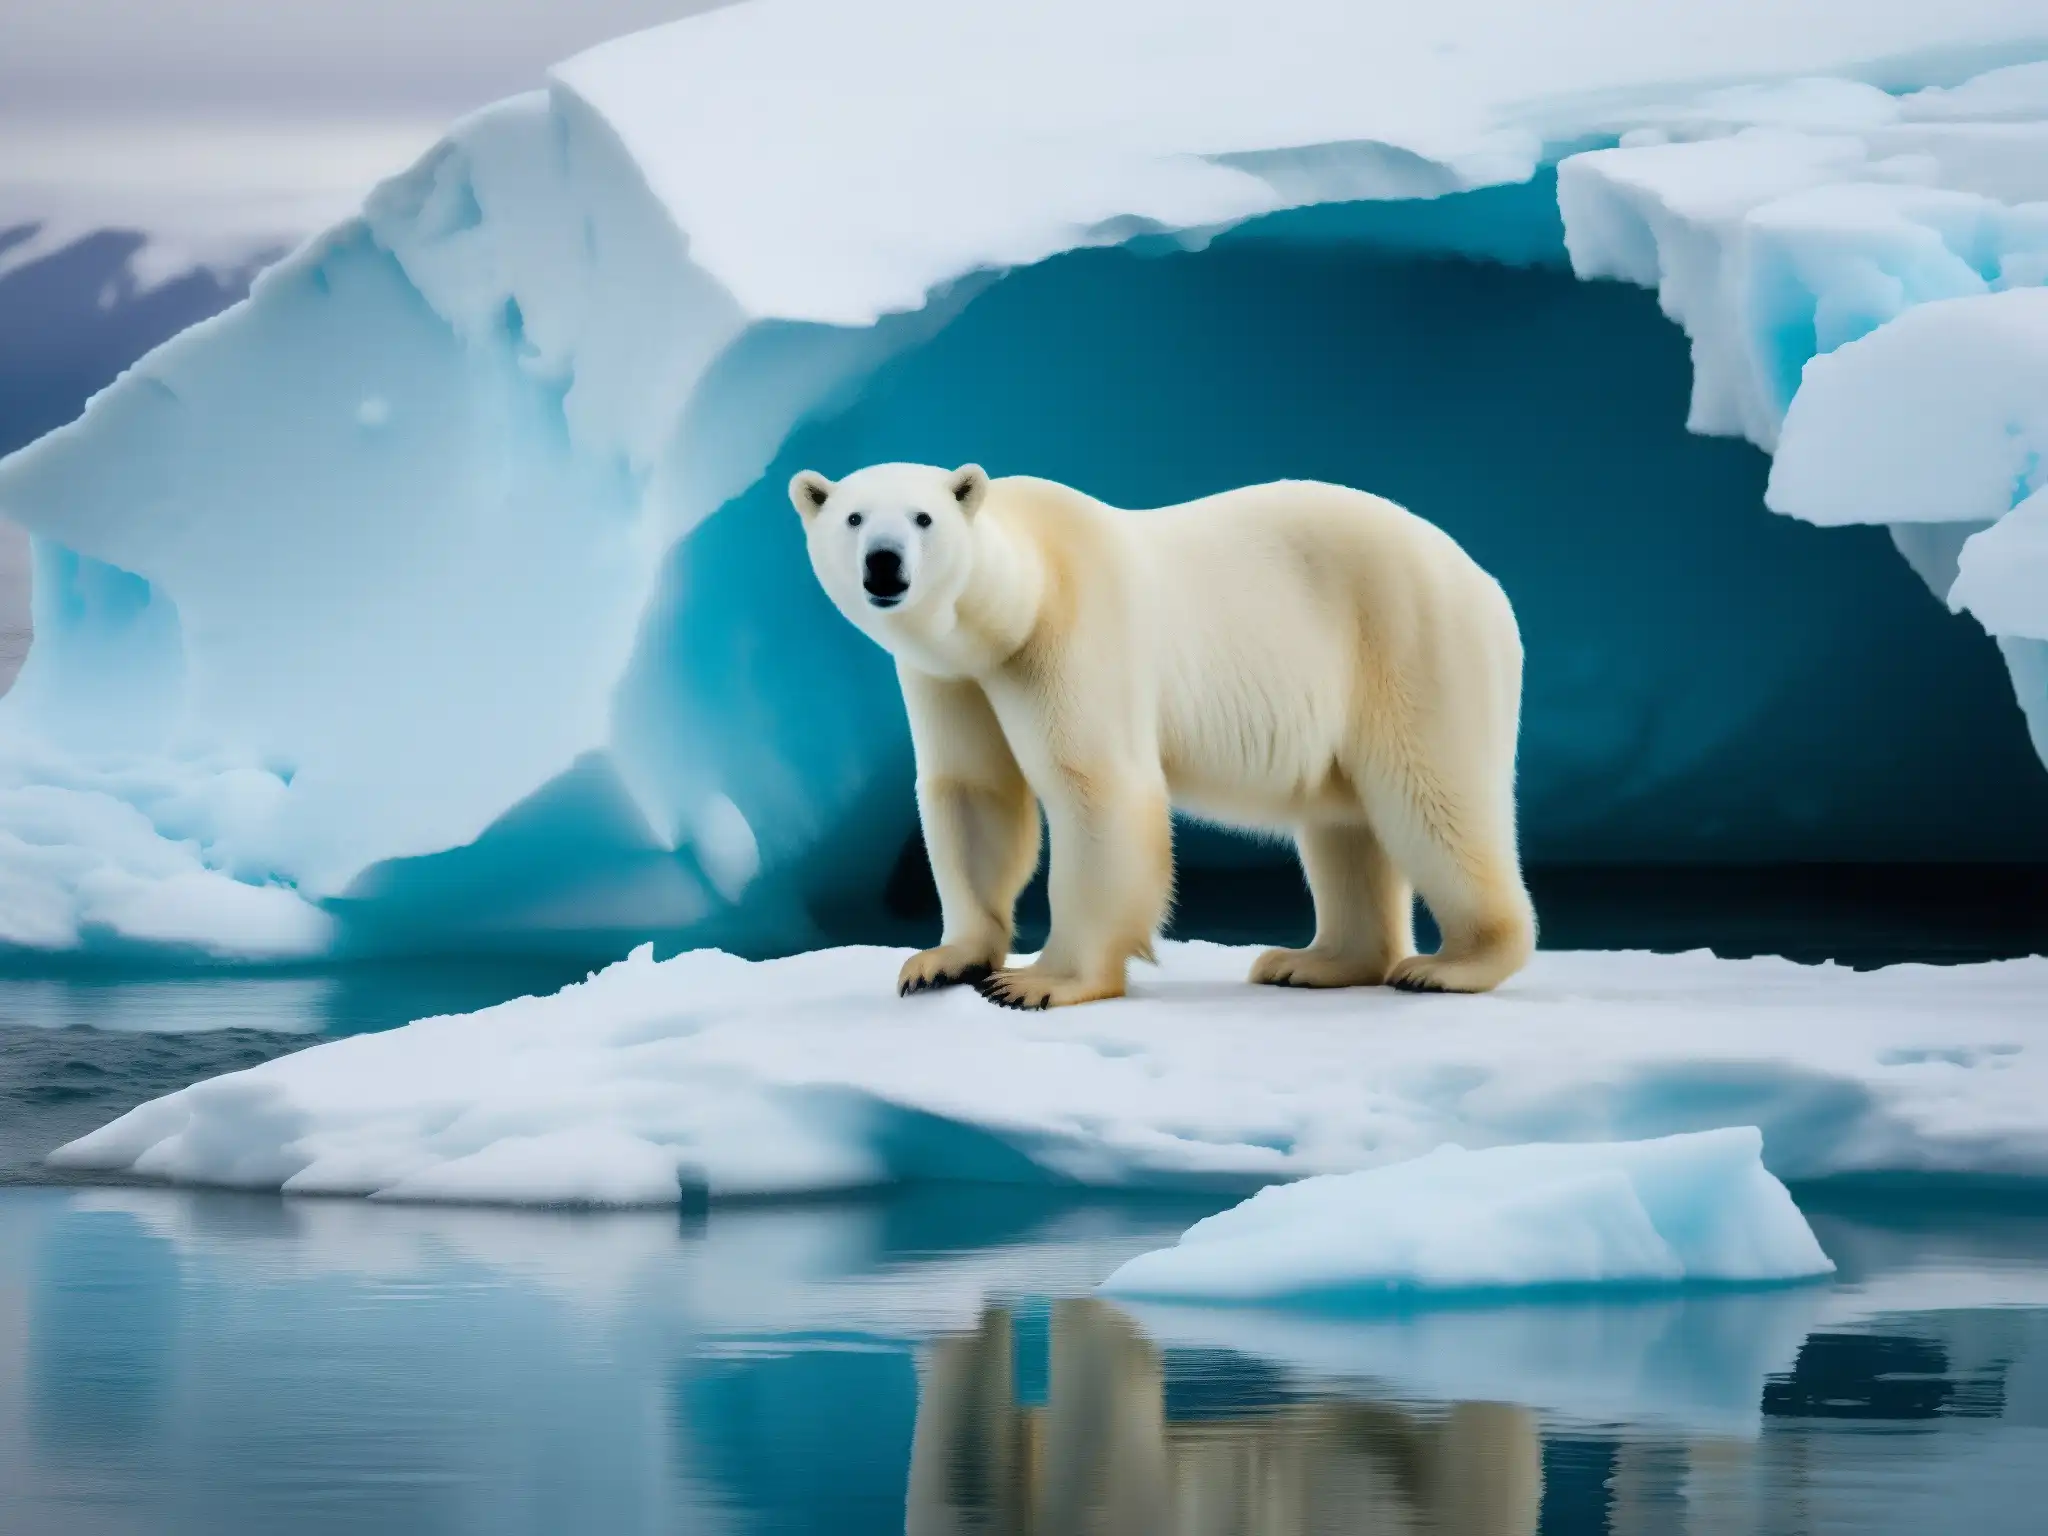 Un oso polar desesperado busca tierra firme en un iceberg derritiéndose, reflejando la crisis ambiental por el calentamiento global